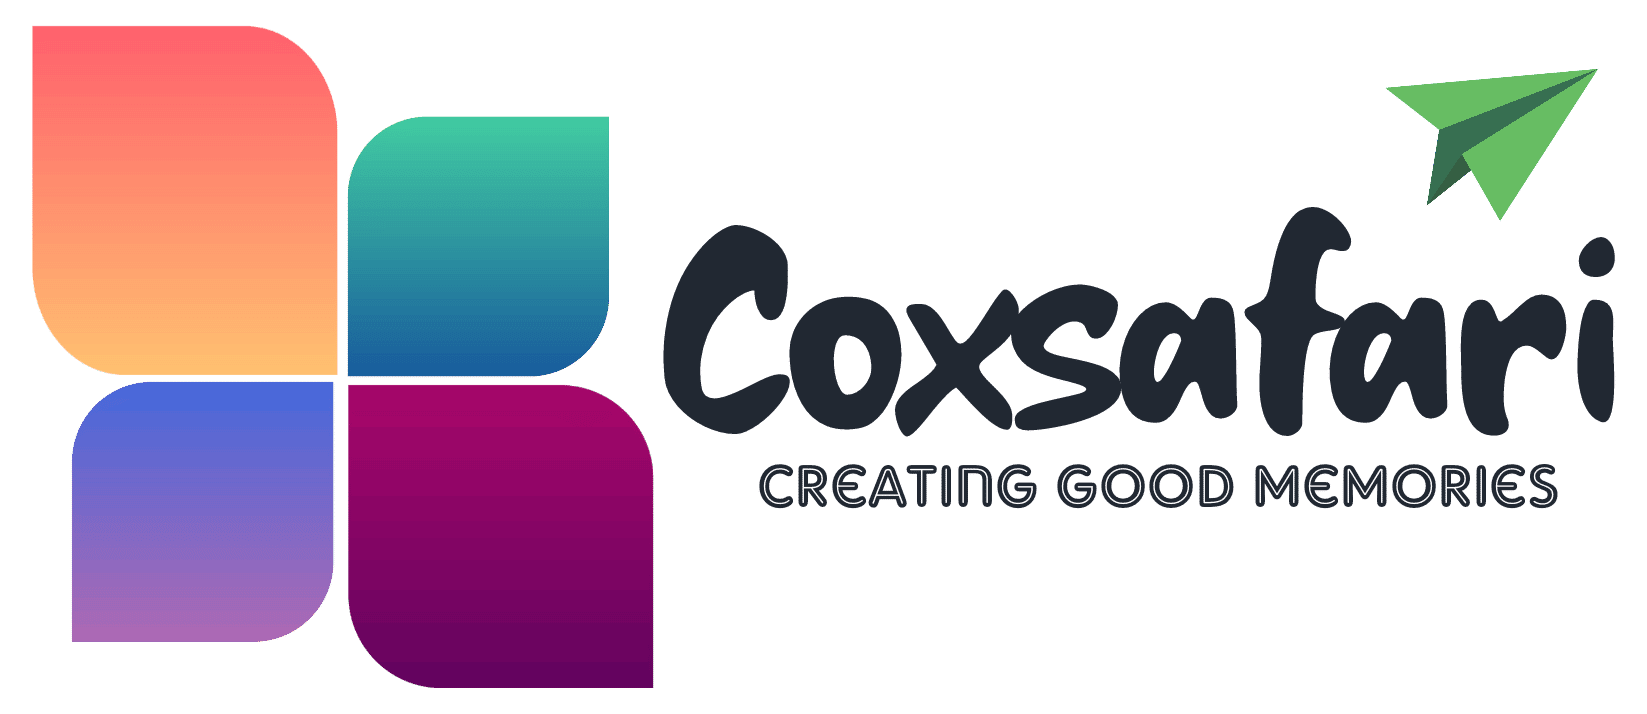 Coxsafari